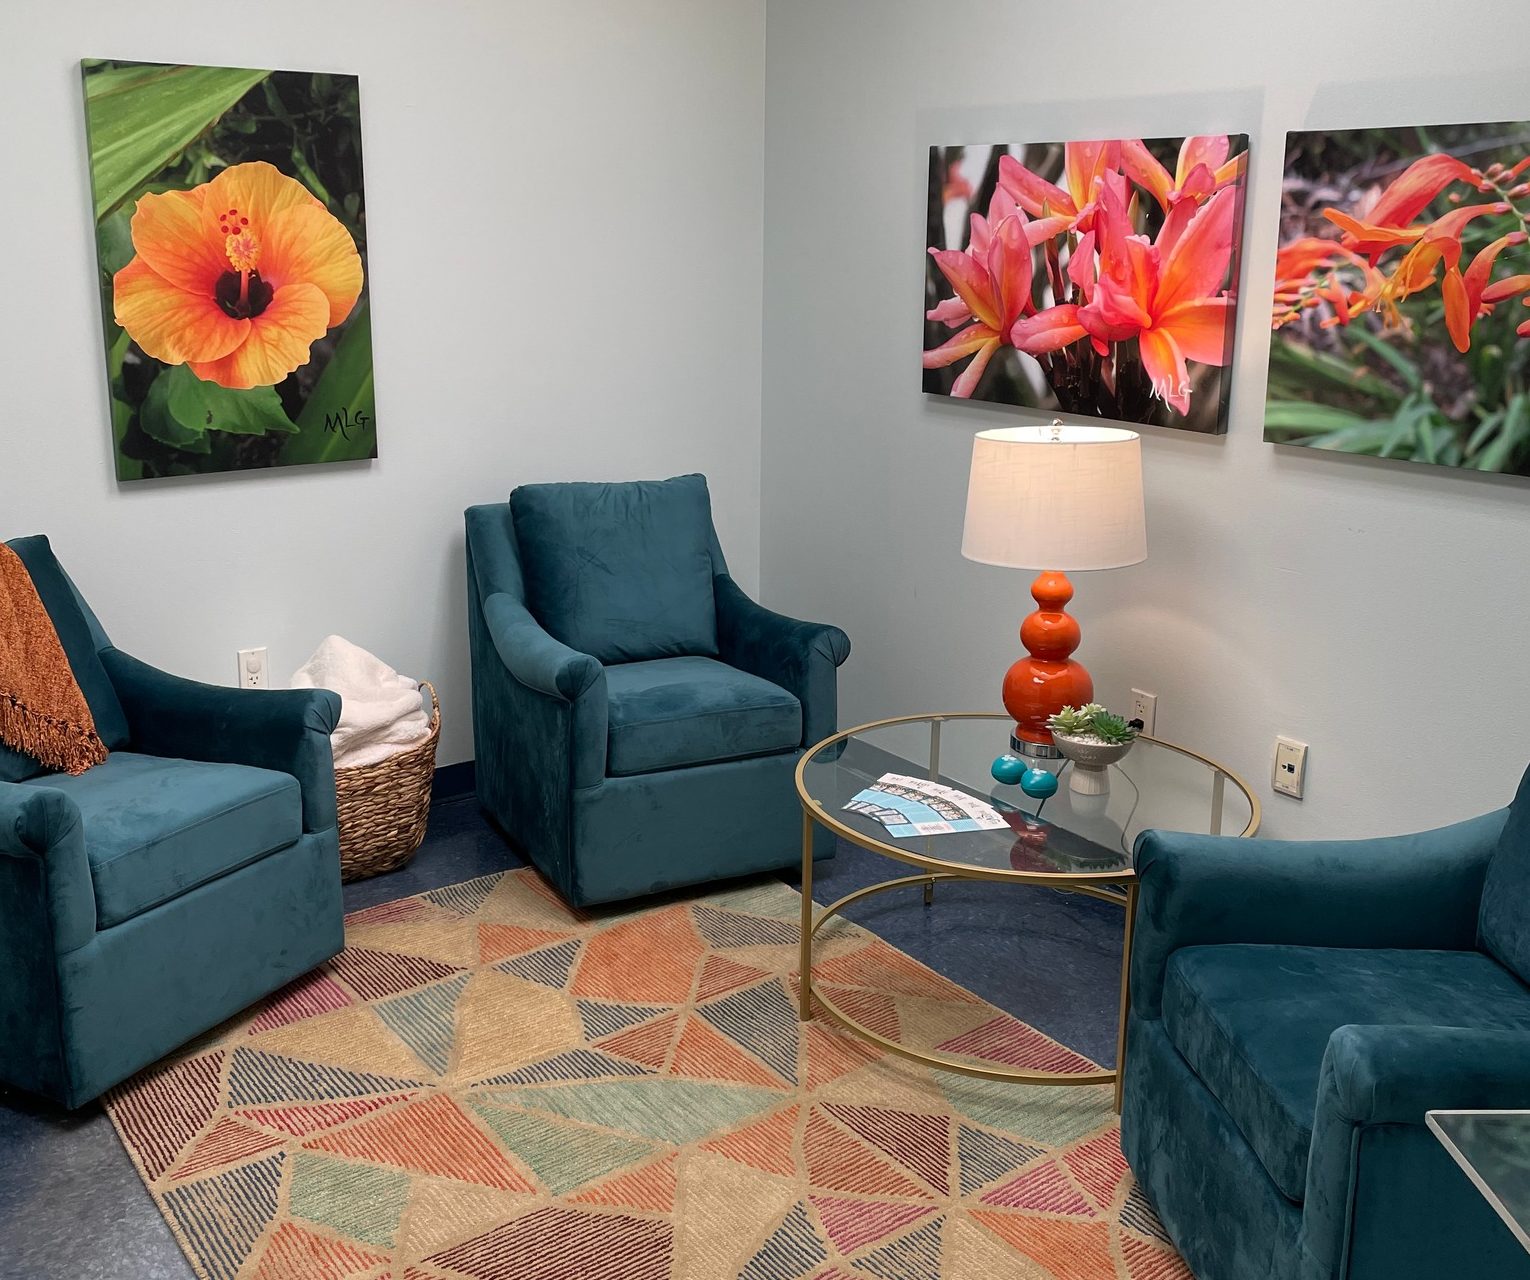 Descripción de la imagen: Una foto de una sala de entrevistas suave, que incluye sillas cómodas, una bonita alfombra, iluminación tenue, agradables cuadros de flores en las paredes y un difusor de aceite.